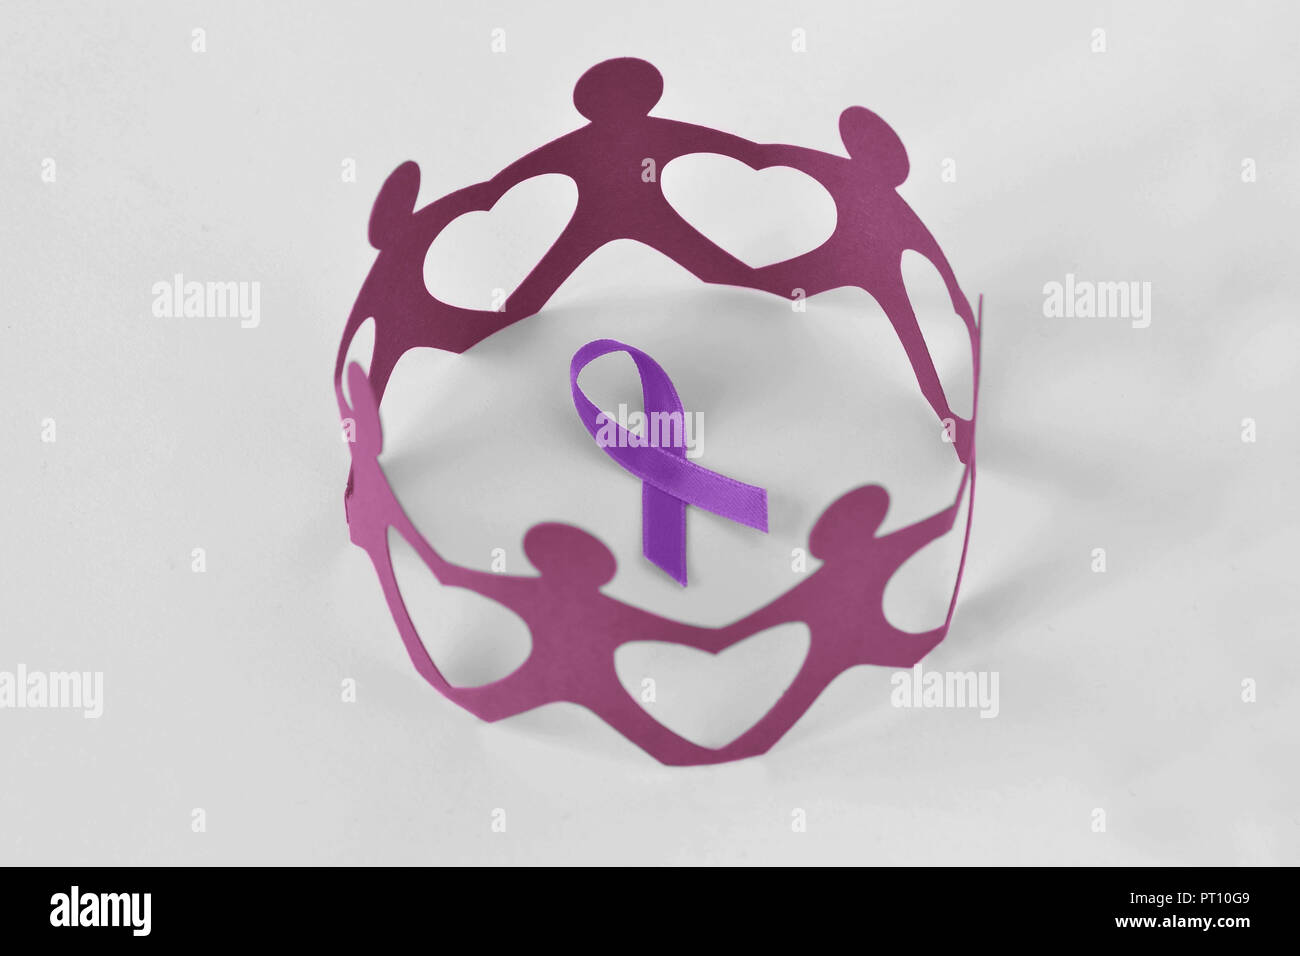 Papier die Menschen in einem Kreis um violette Band auf weißem Hintergrund - Begriff der häuslichen Gewalt Sensibilisierung; Alzheimer, Bauchspeicheldrüsenkrebs, Ep. Stockfoto